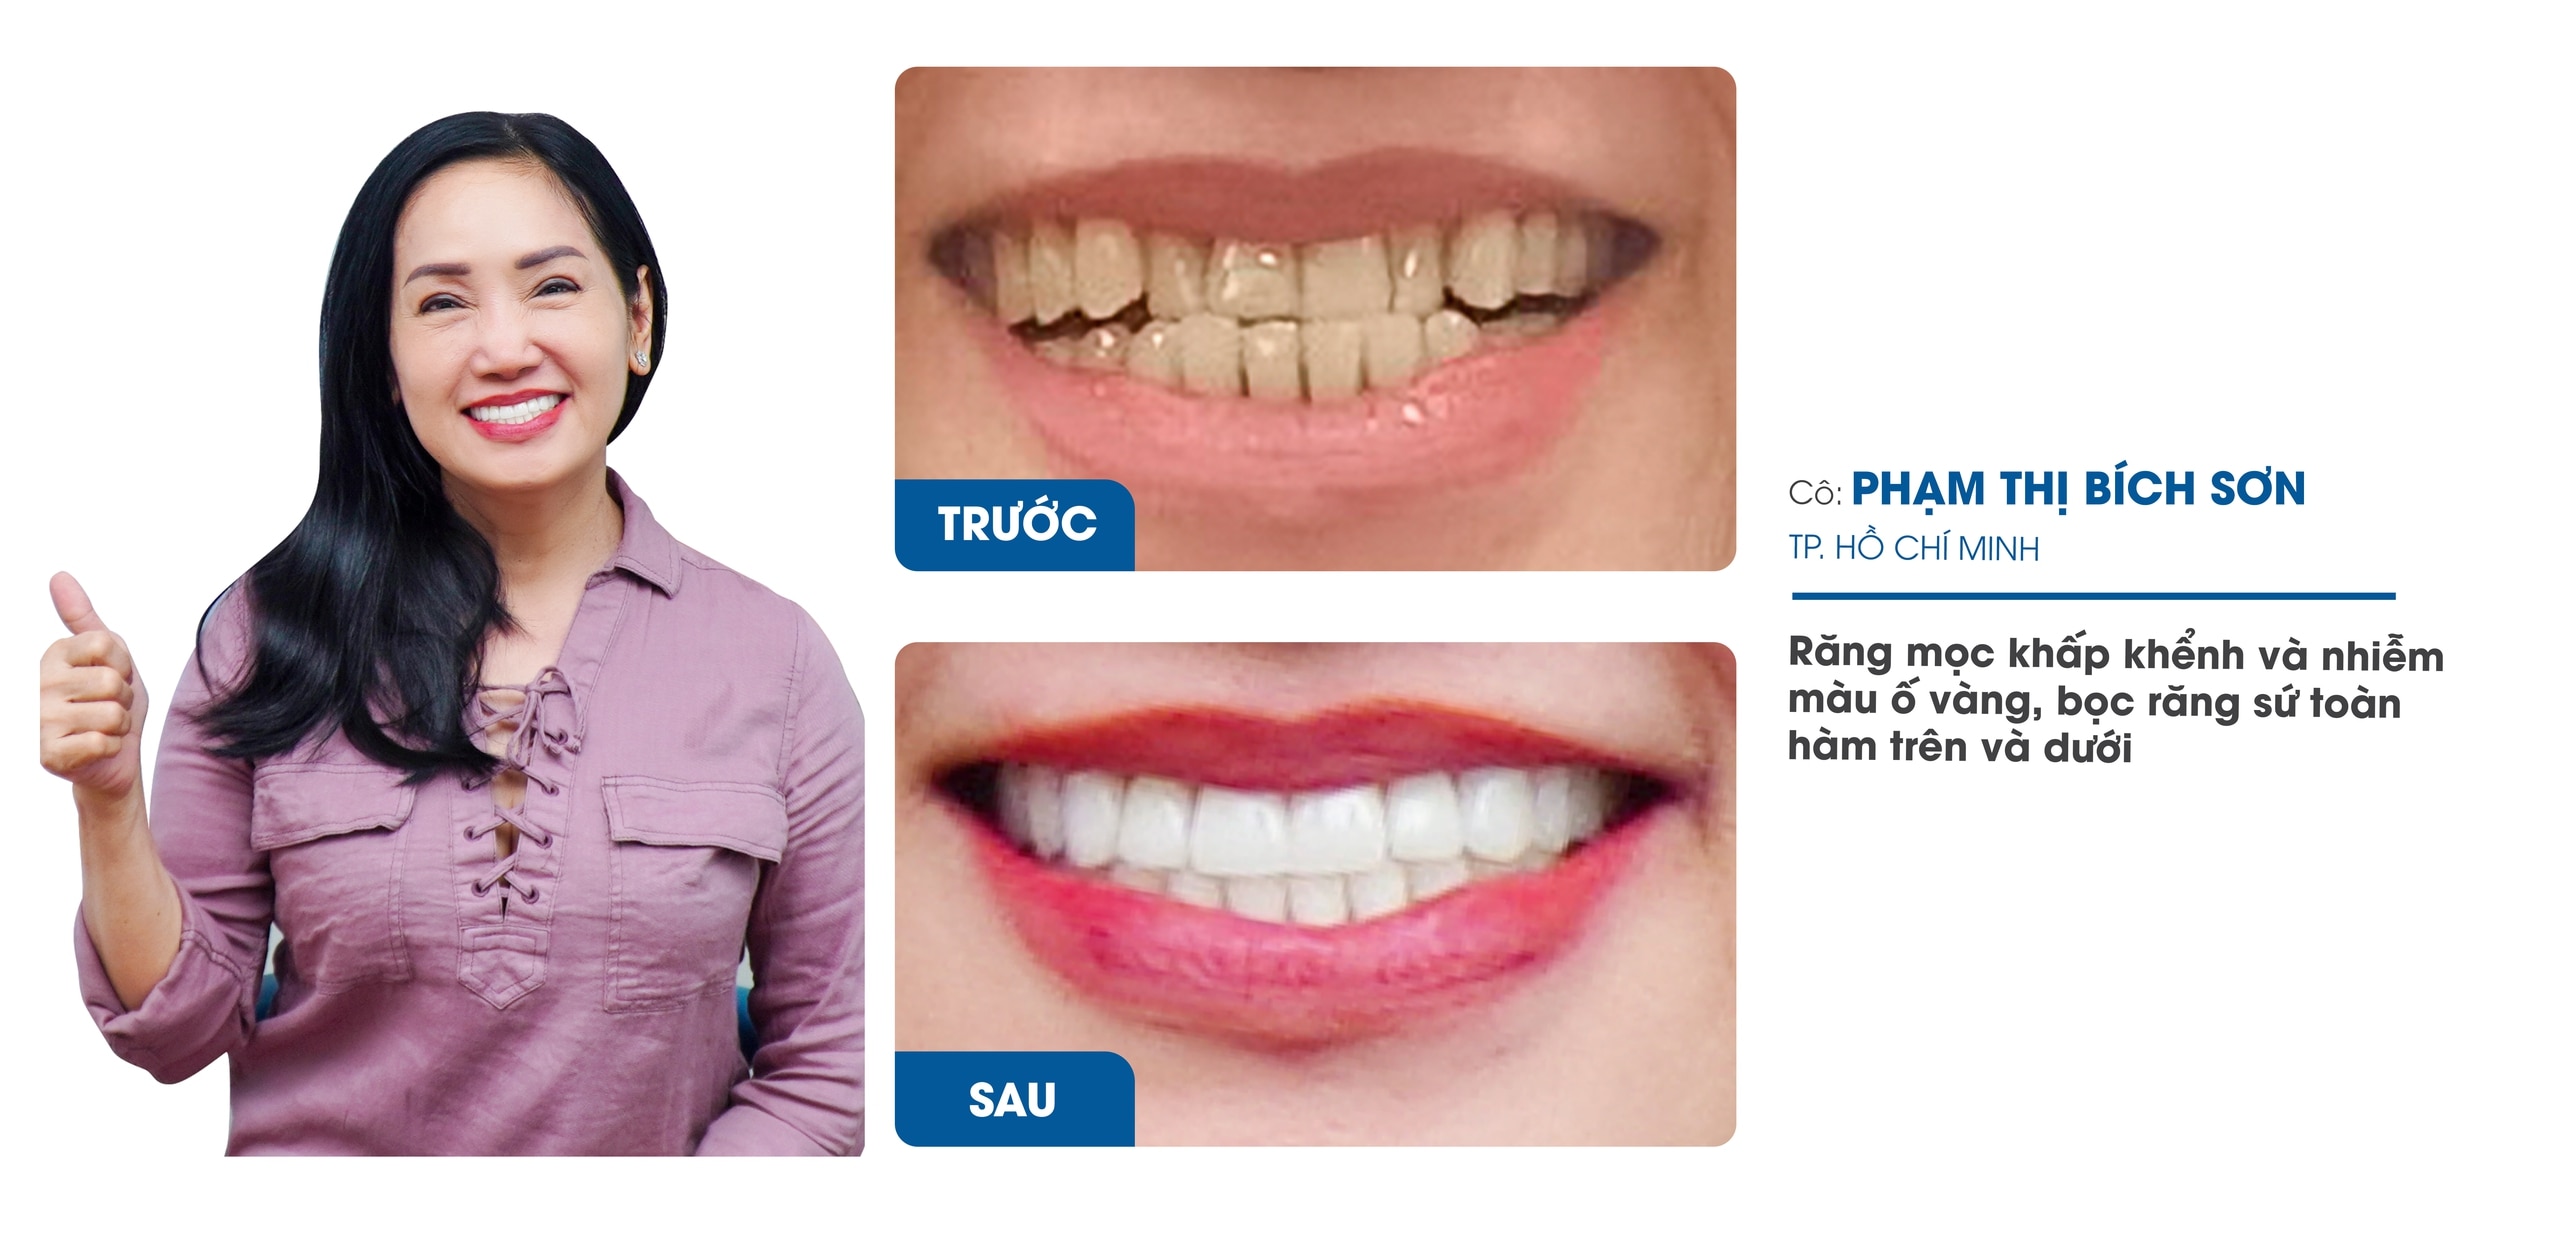 Nha Khoa Răng Sứ I-Dent Diamondtech ứng dụng công nghệ Digital Smile Design trong thiết kế nụ cười- Ảnh 2.